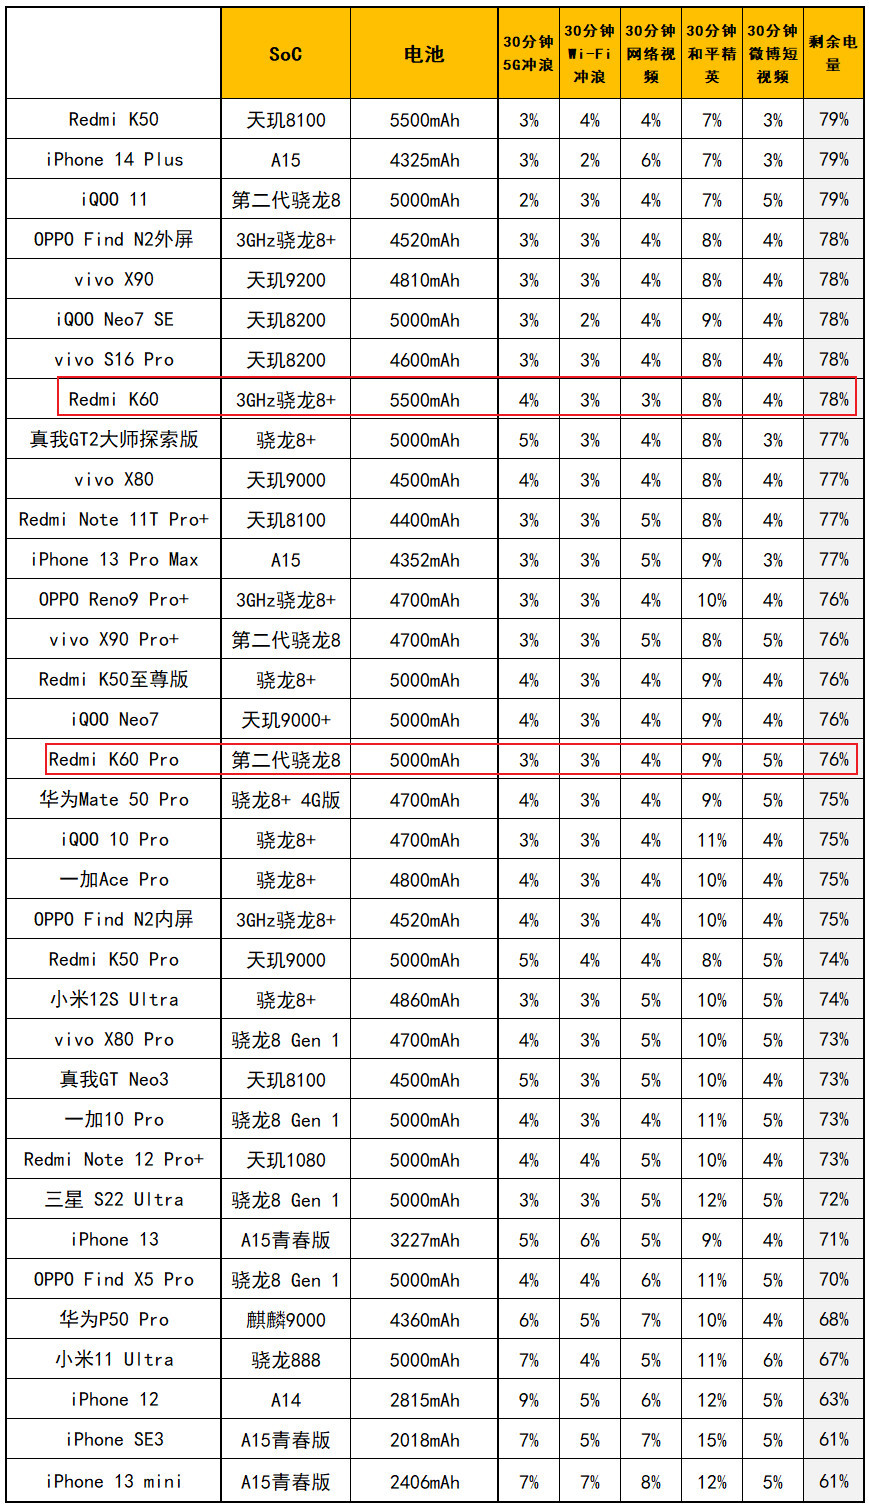 变贵也变强了，Redmi K60 Pro评测：3299元起的二代骁龙8